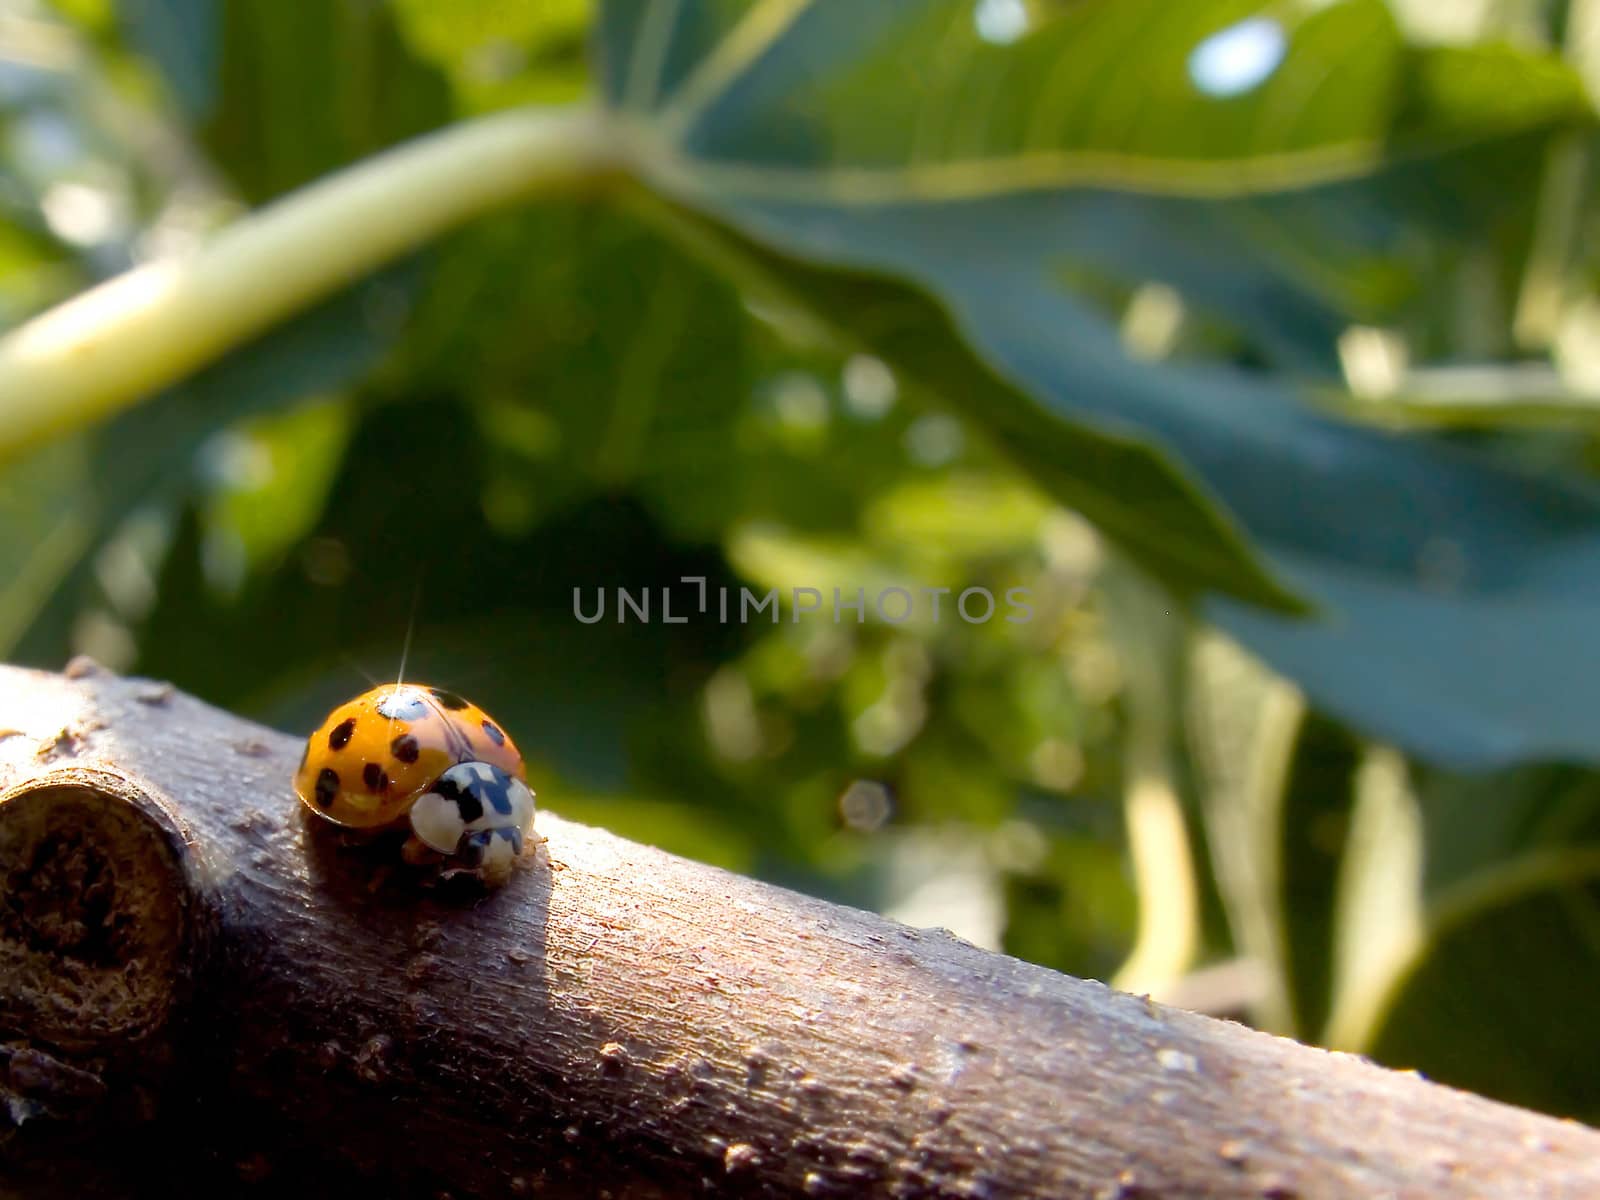 yellow ladybug by fadeinphotography